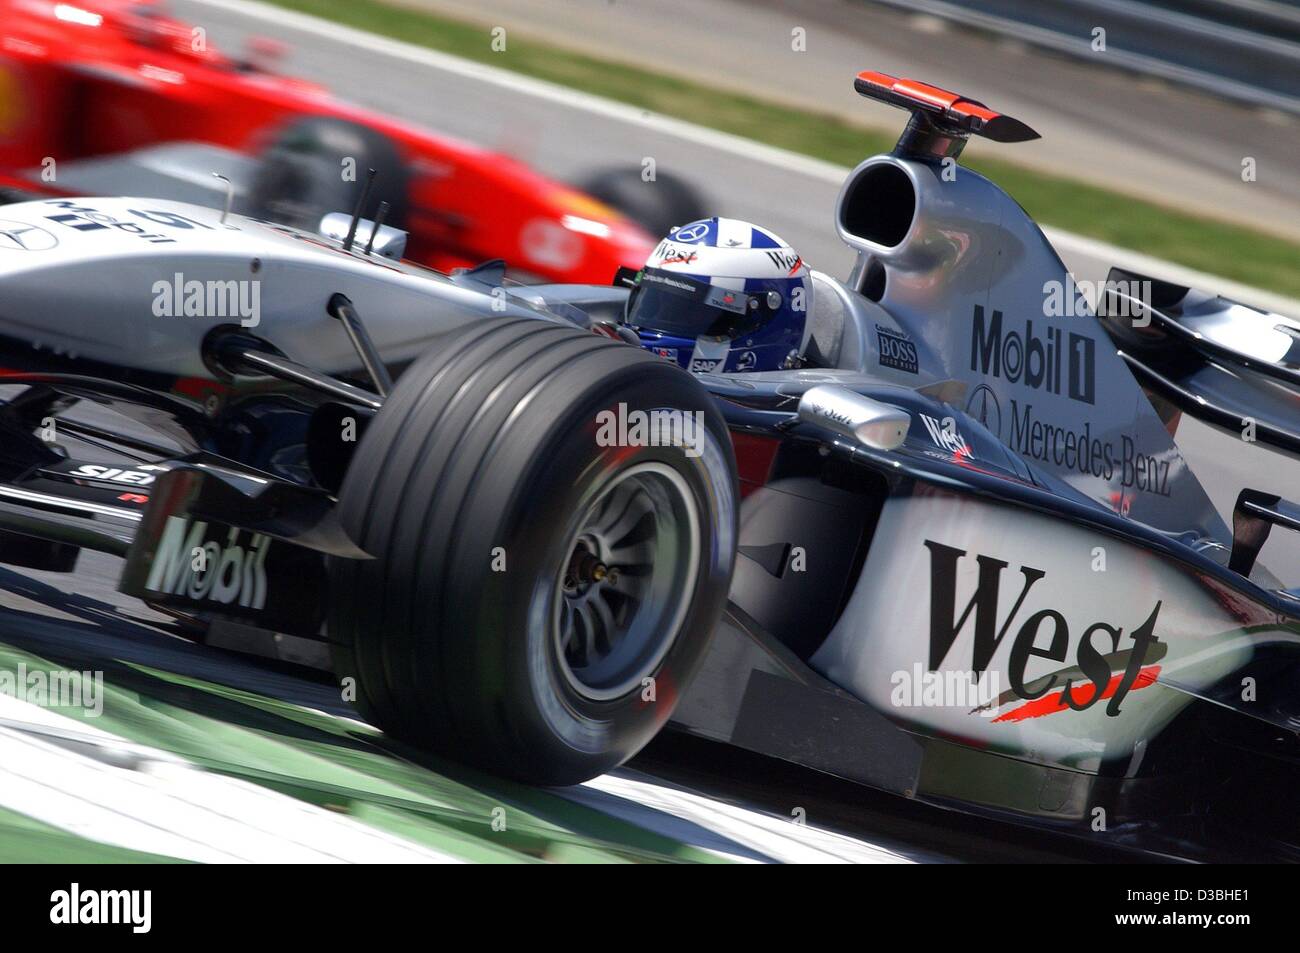 (Dpa) - Un piloto de Fórmula uno escocés David Coulthard (McLaren-Mercedes) carreras a lo largo de la pista con su coche de carreras de Fórmula uno en la vuelta de formación cualificante durante el Gran Premio de Austria en el A1-Ring racetrack en Zeltweg, Austria, el 16 de mayo de 2003. El gran premio de Austria, que es el sexto rac Foto de stock